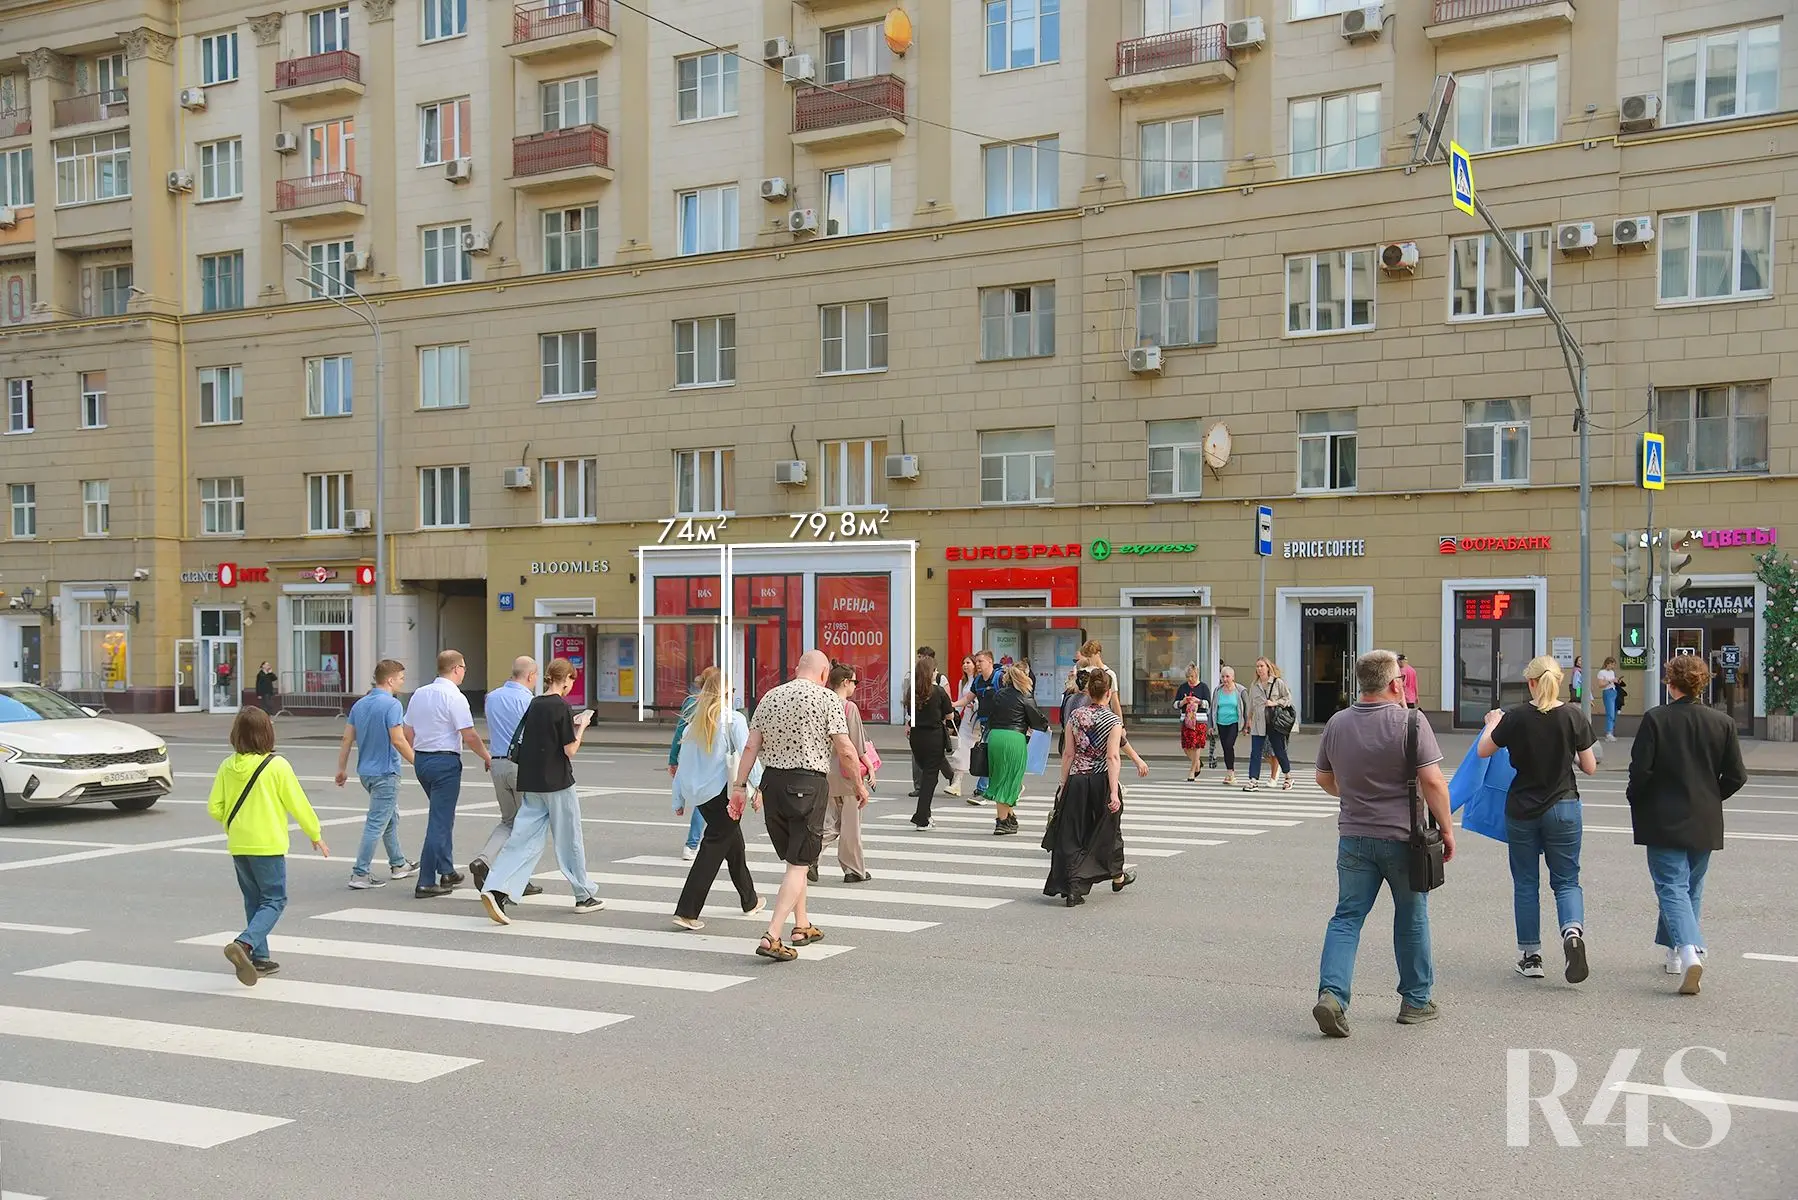 Продажа торговых помещений площадью 74 - 79.8 м2 в Москве:  проспект Мира, 48 R4S | Realty4Sale